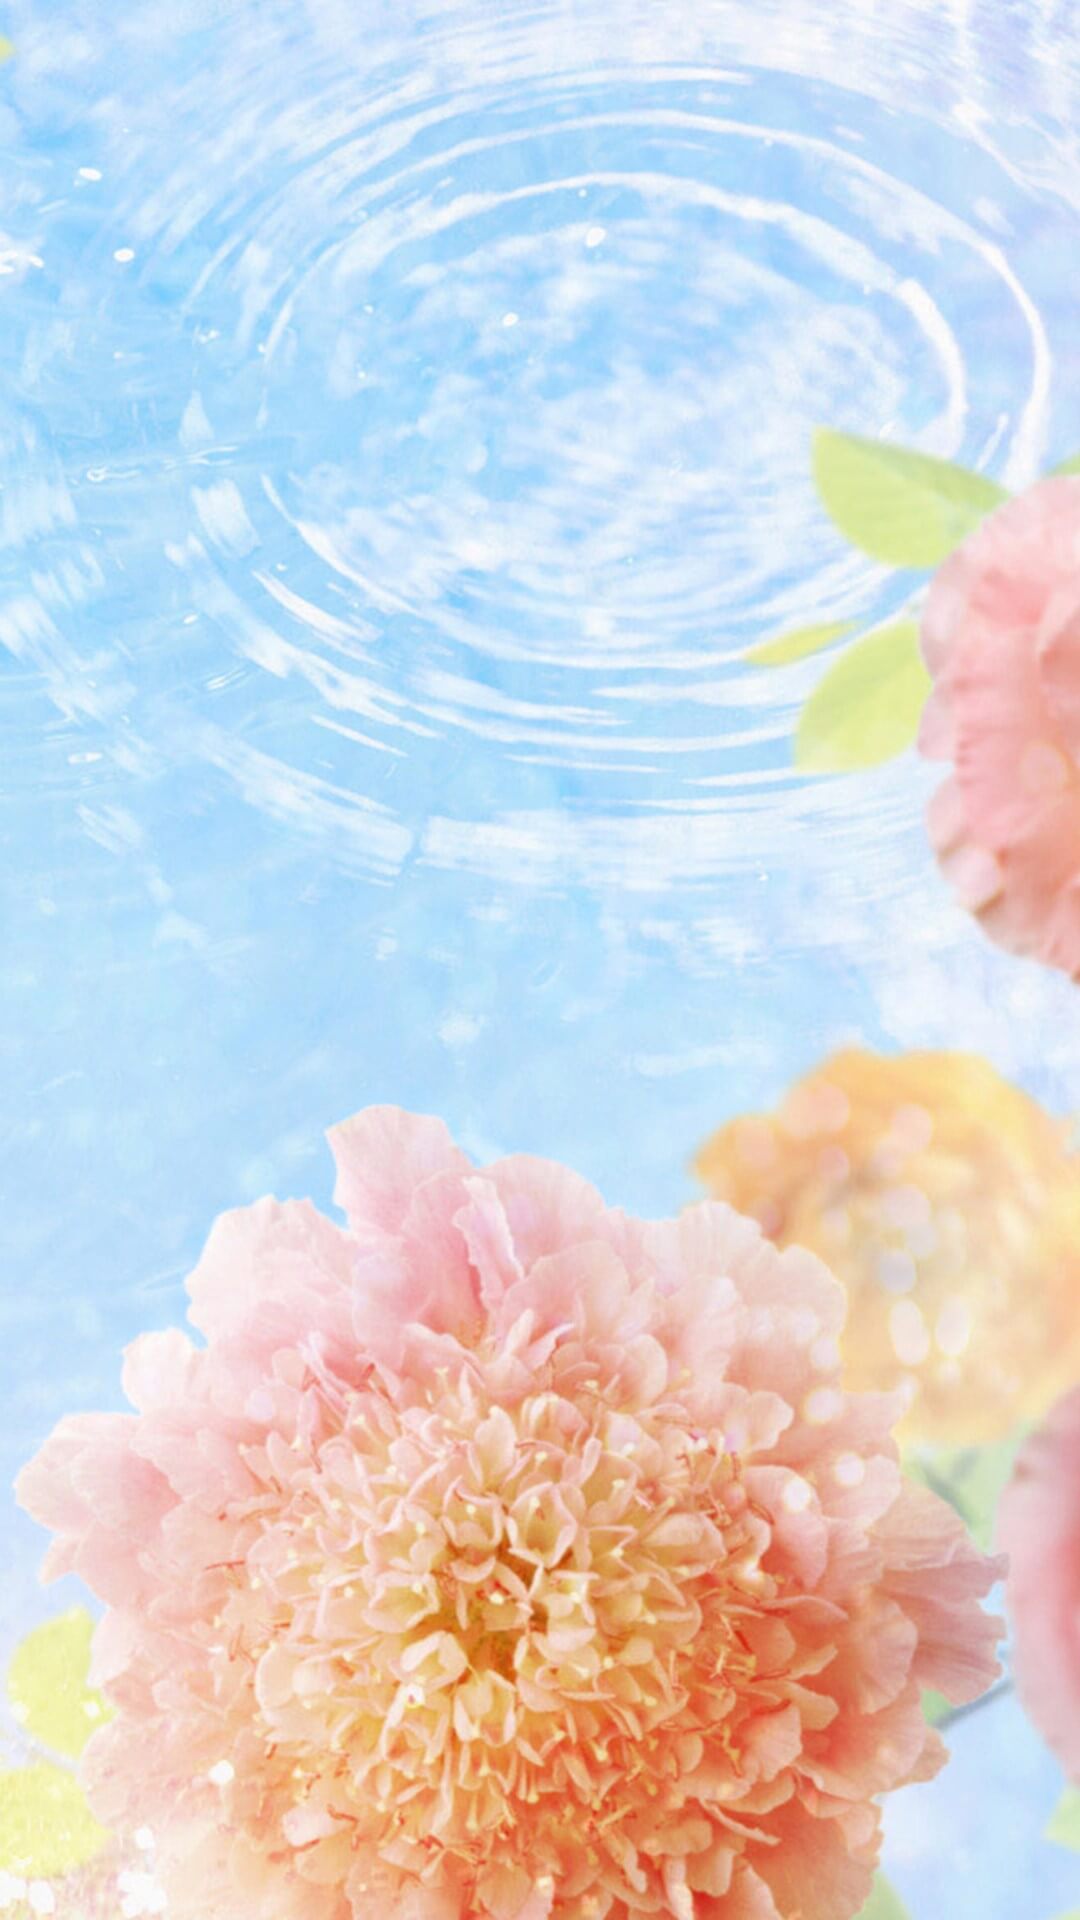 Hình nền hoa lãng mạn: Với hình nền hoa lãng mạn, điện thoại của bạn sẽ trở nên thật sự độc đáo và nổi bật. Hình ảnh hoa được thiết kế tinh tế và đầy tình cảm sẽ giúp bạn tạo ra một không gian mở trên màn hình điện thoại. Hãy truy cập ngay vào địa chỉ của chúng tôi để có thể tải những hình nền hoa đẹp nhất nhé!